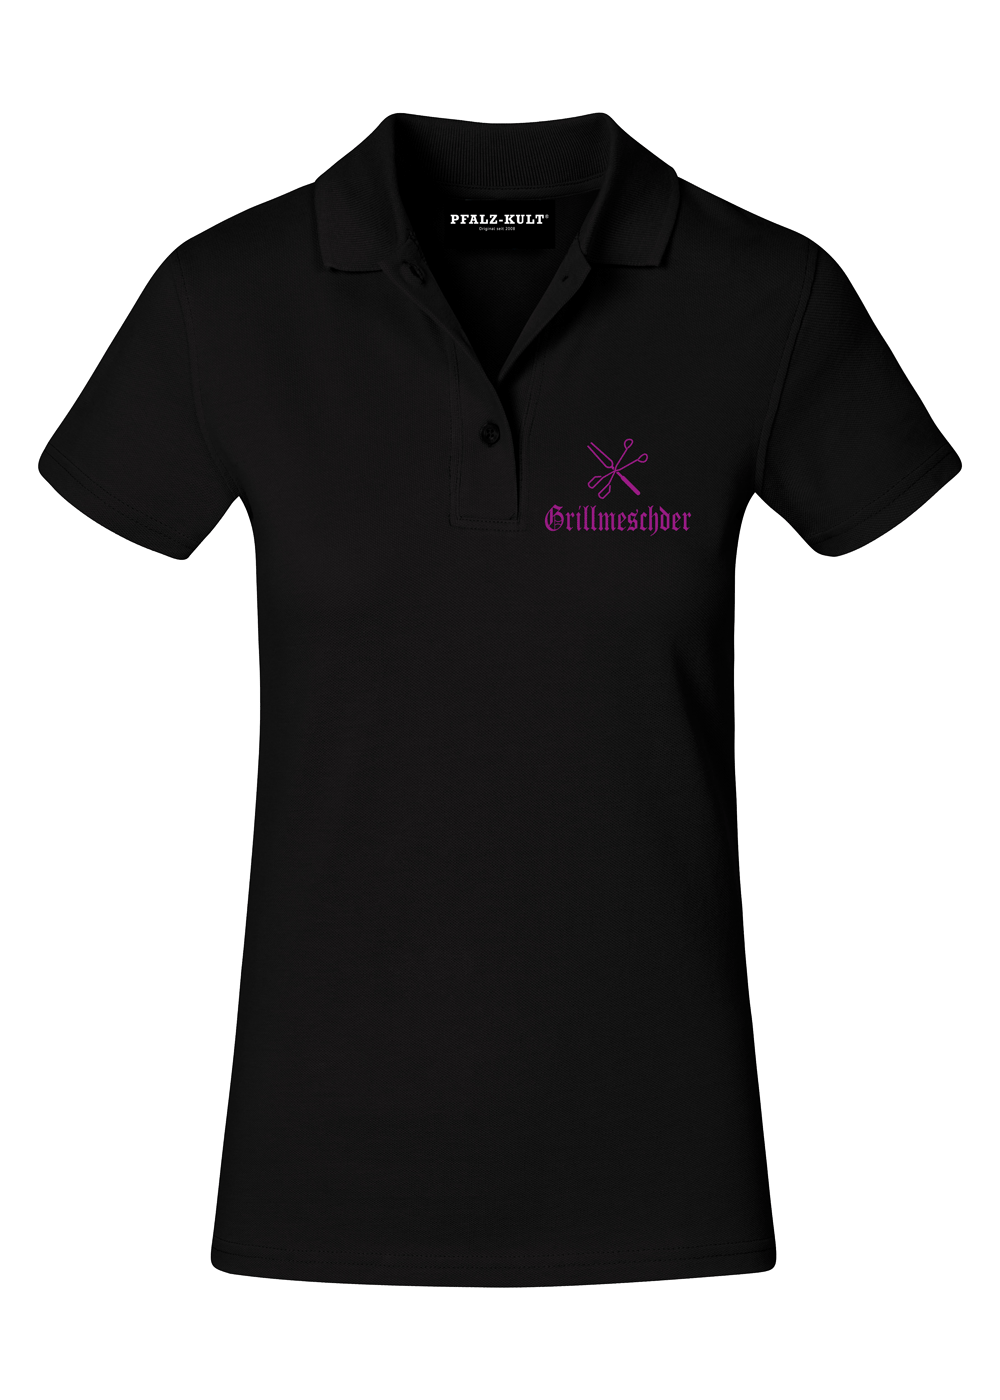 Grillmeschder - Poloshirt Frauen